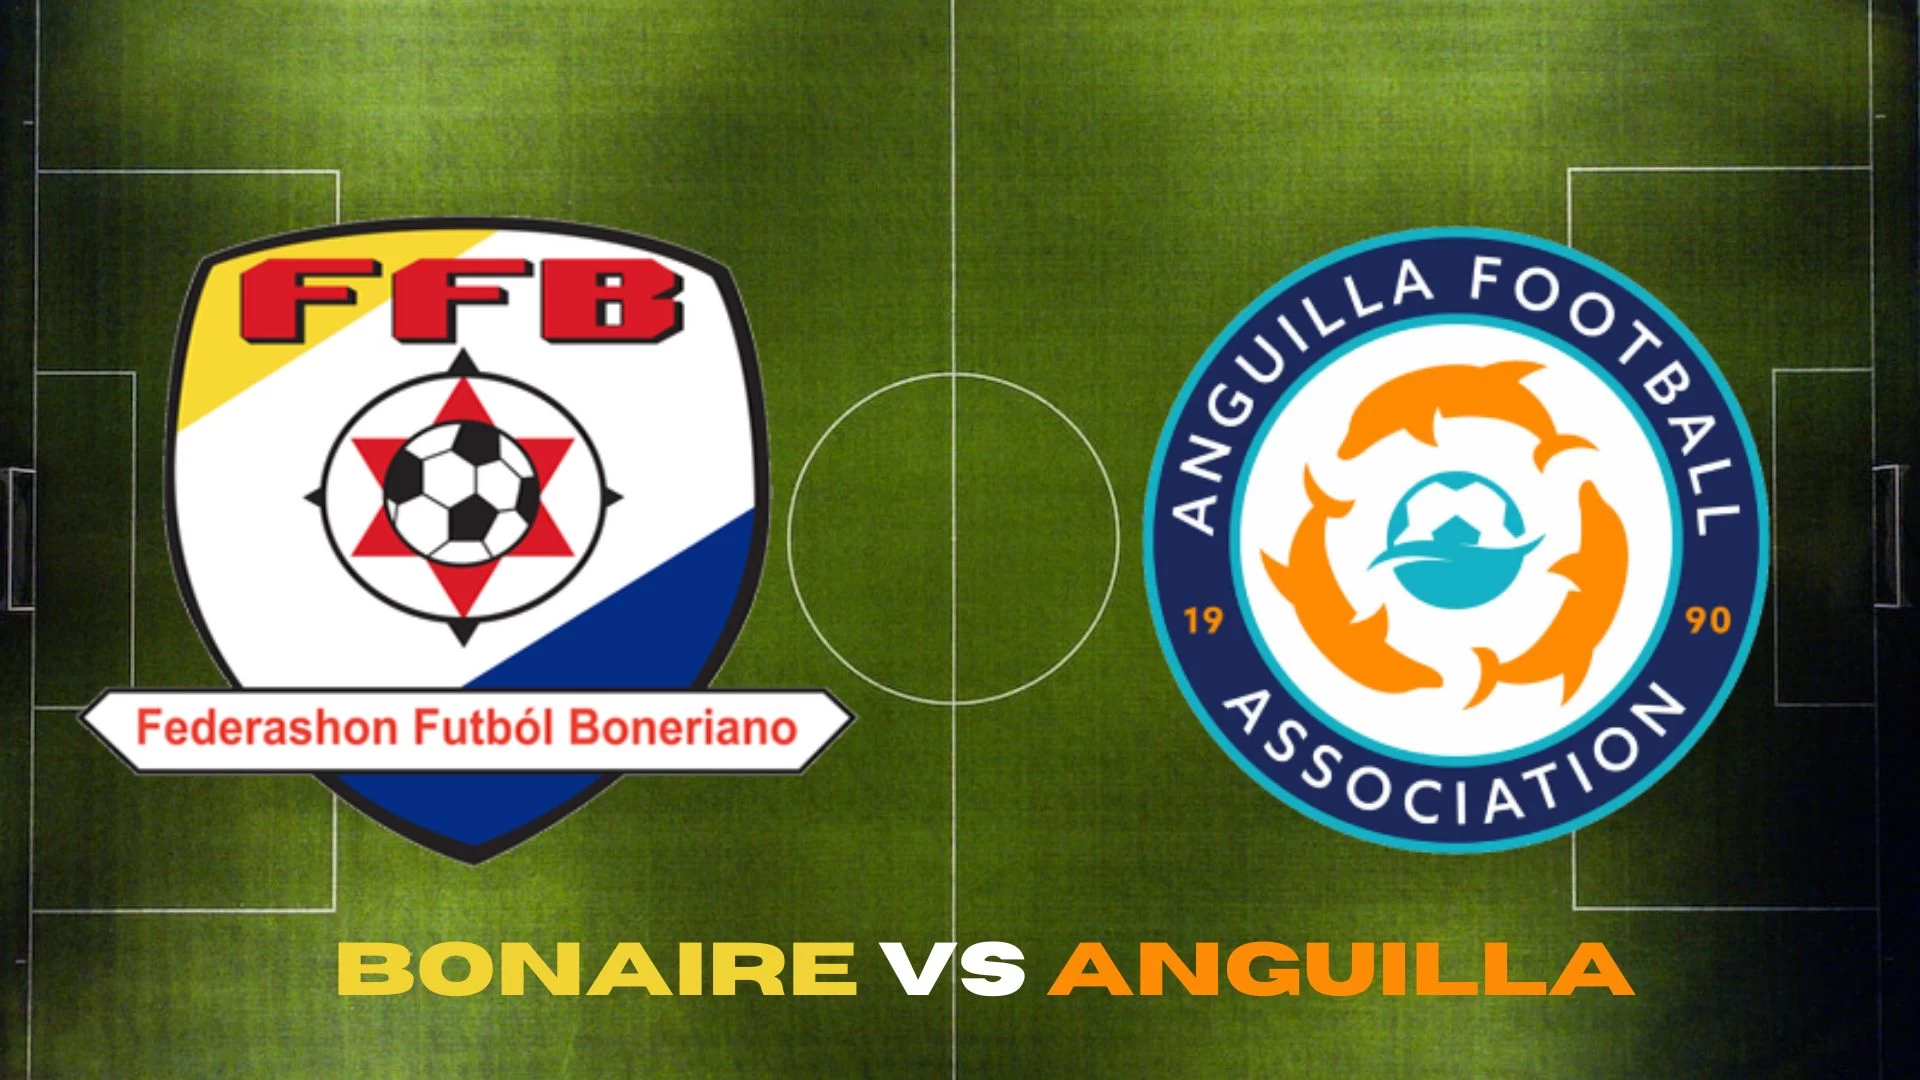 Where to Watch Bonaire vs Anguilla? Picks and Prediction for Bonaire vs Anguilla